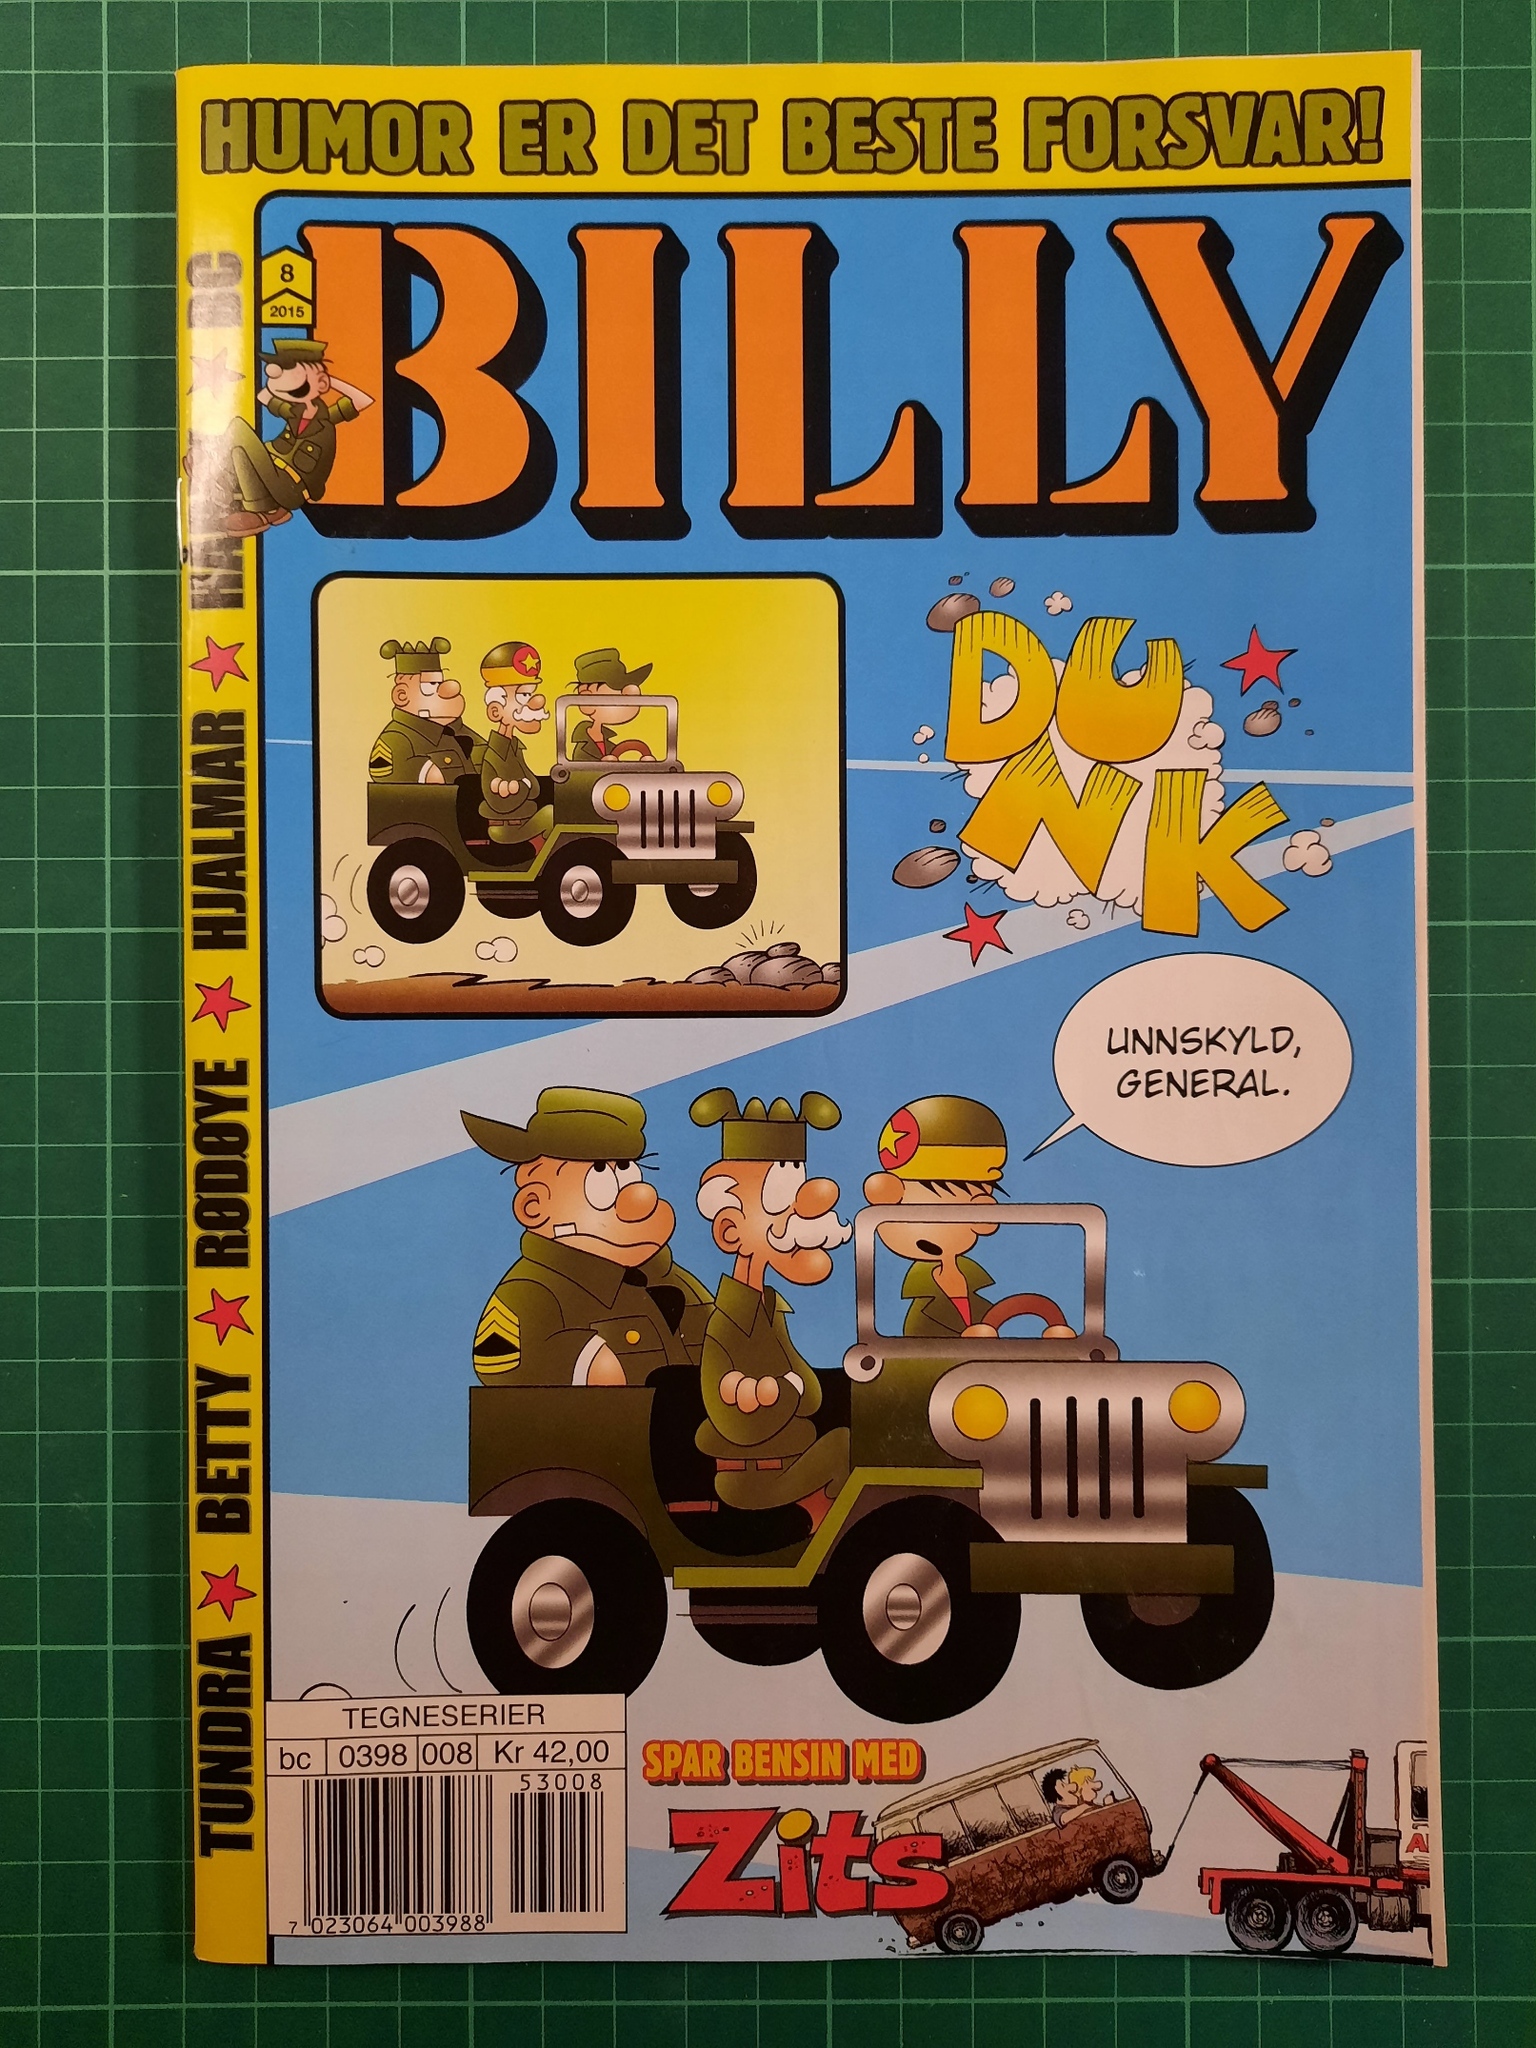 Billy 2015 - 08